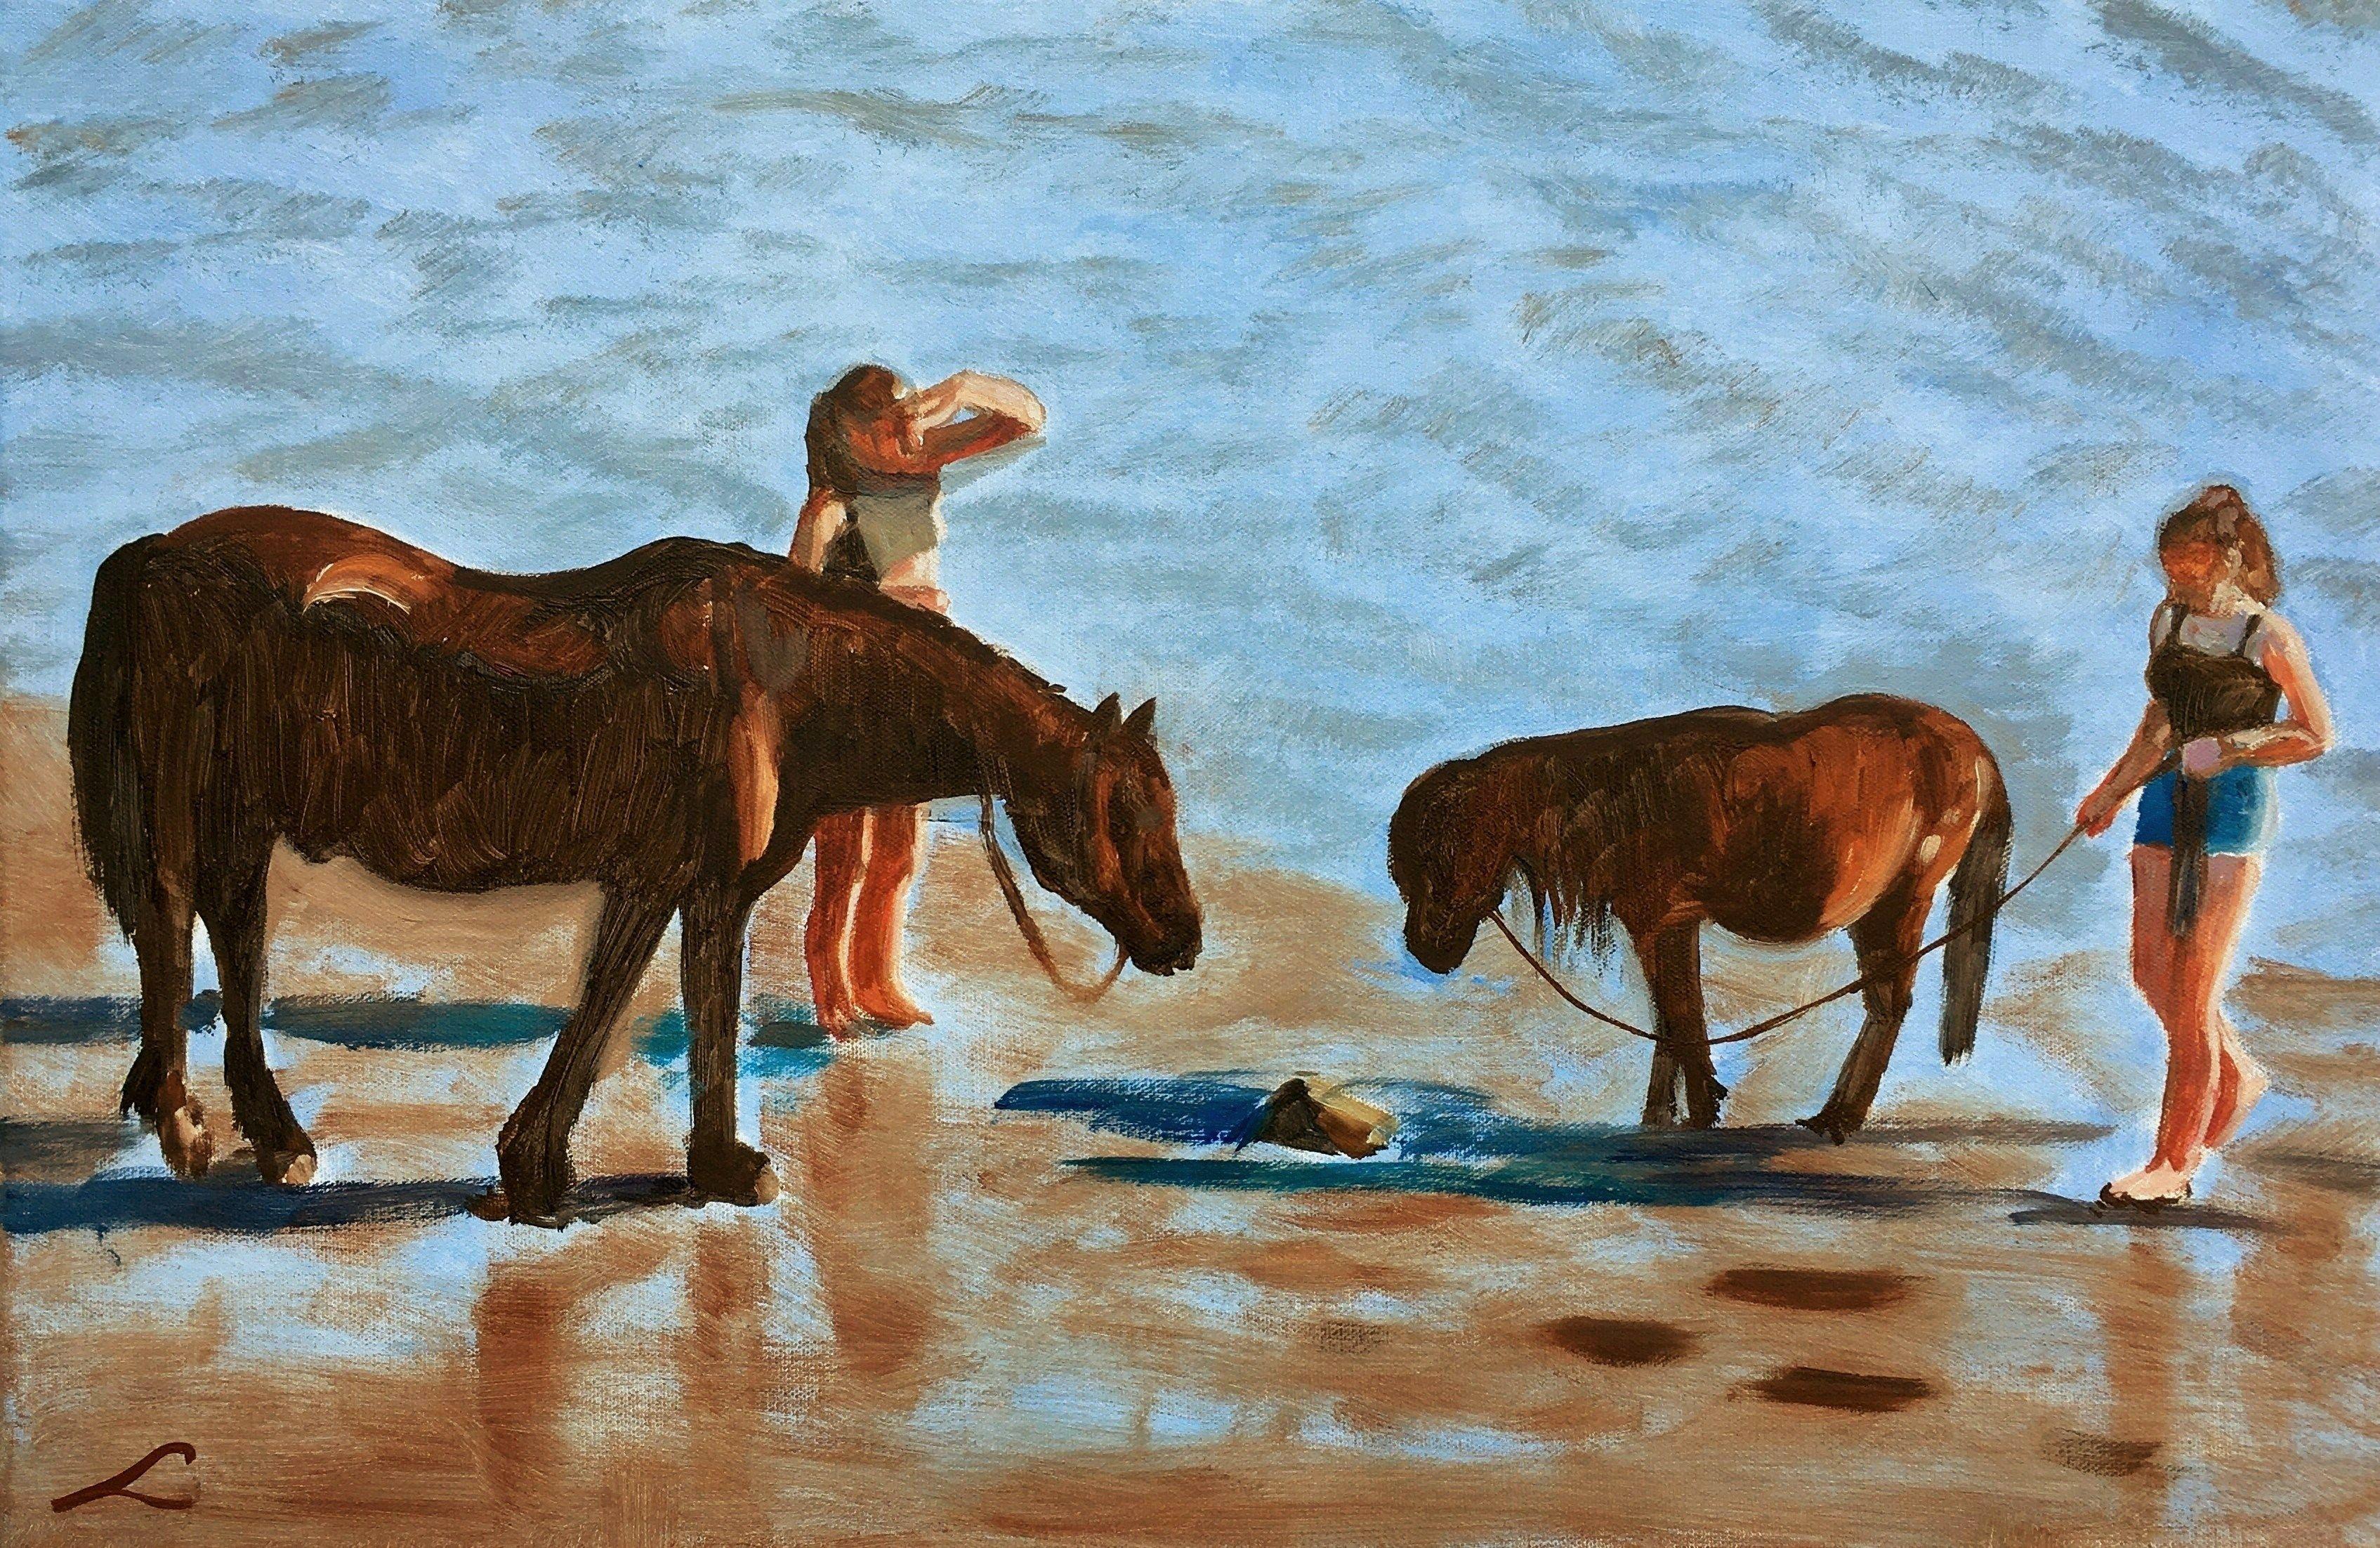 Peinture - Scène de plage 4, huile sur toile - Painting de Elena Sokolova